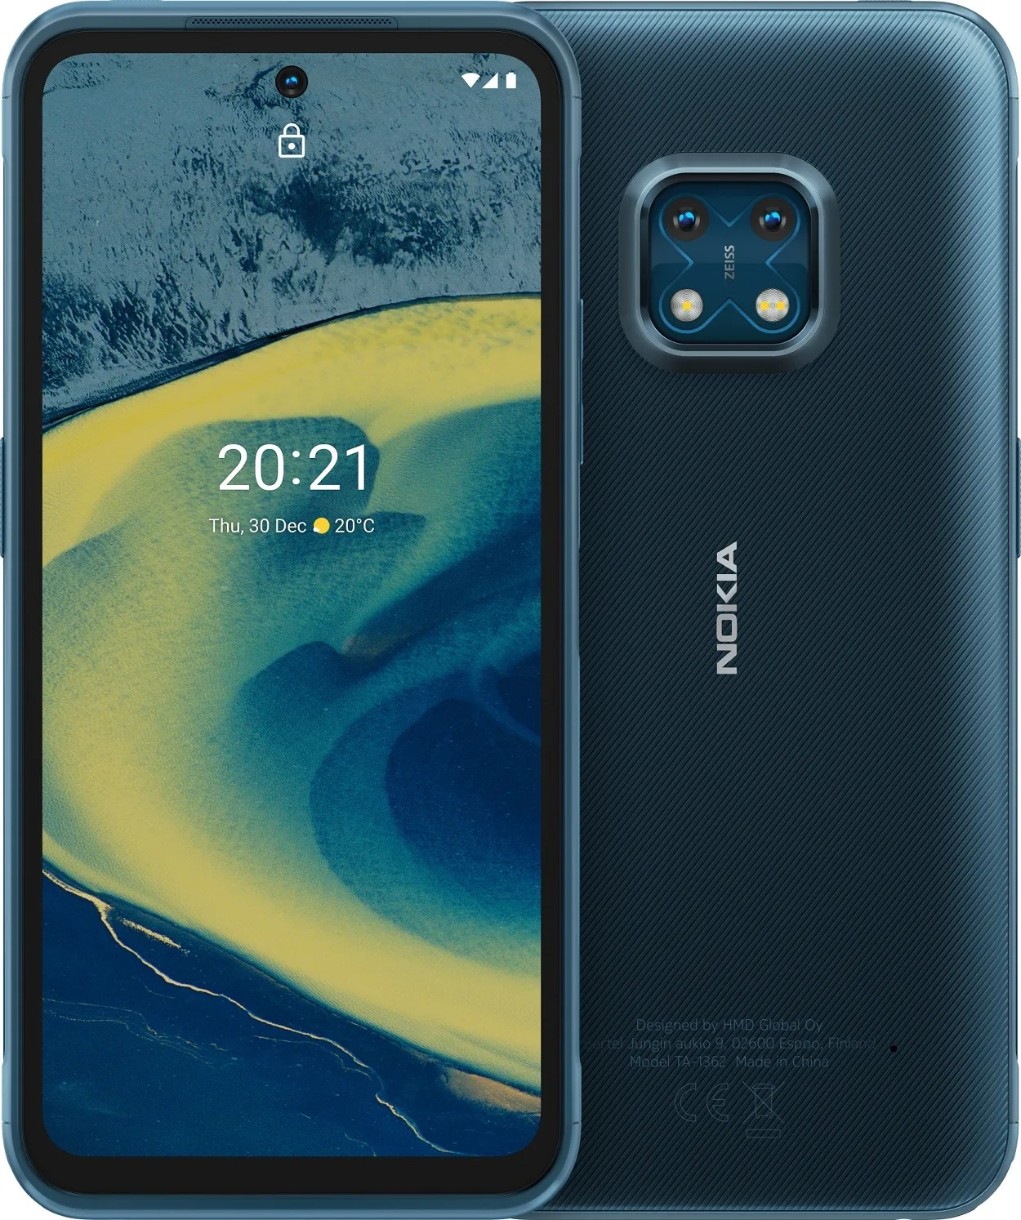 Telefon mobil Nokia XR20 4Gb/64Gb Blue